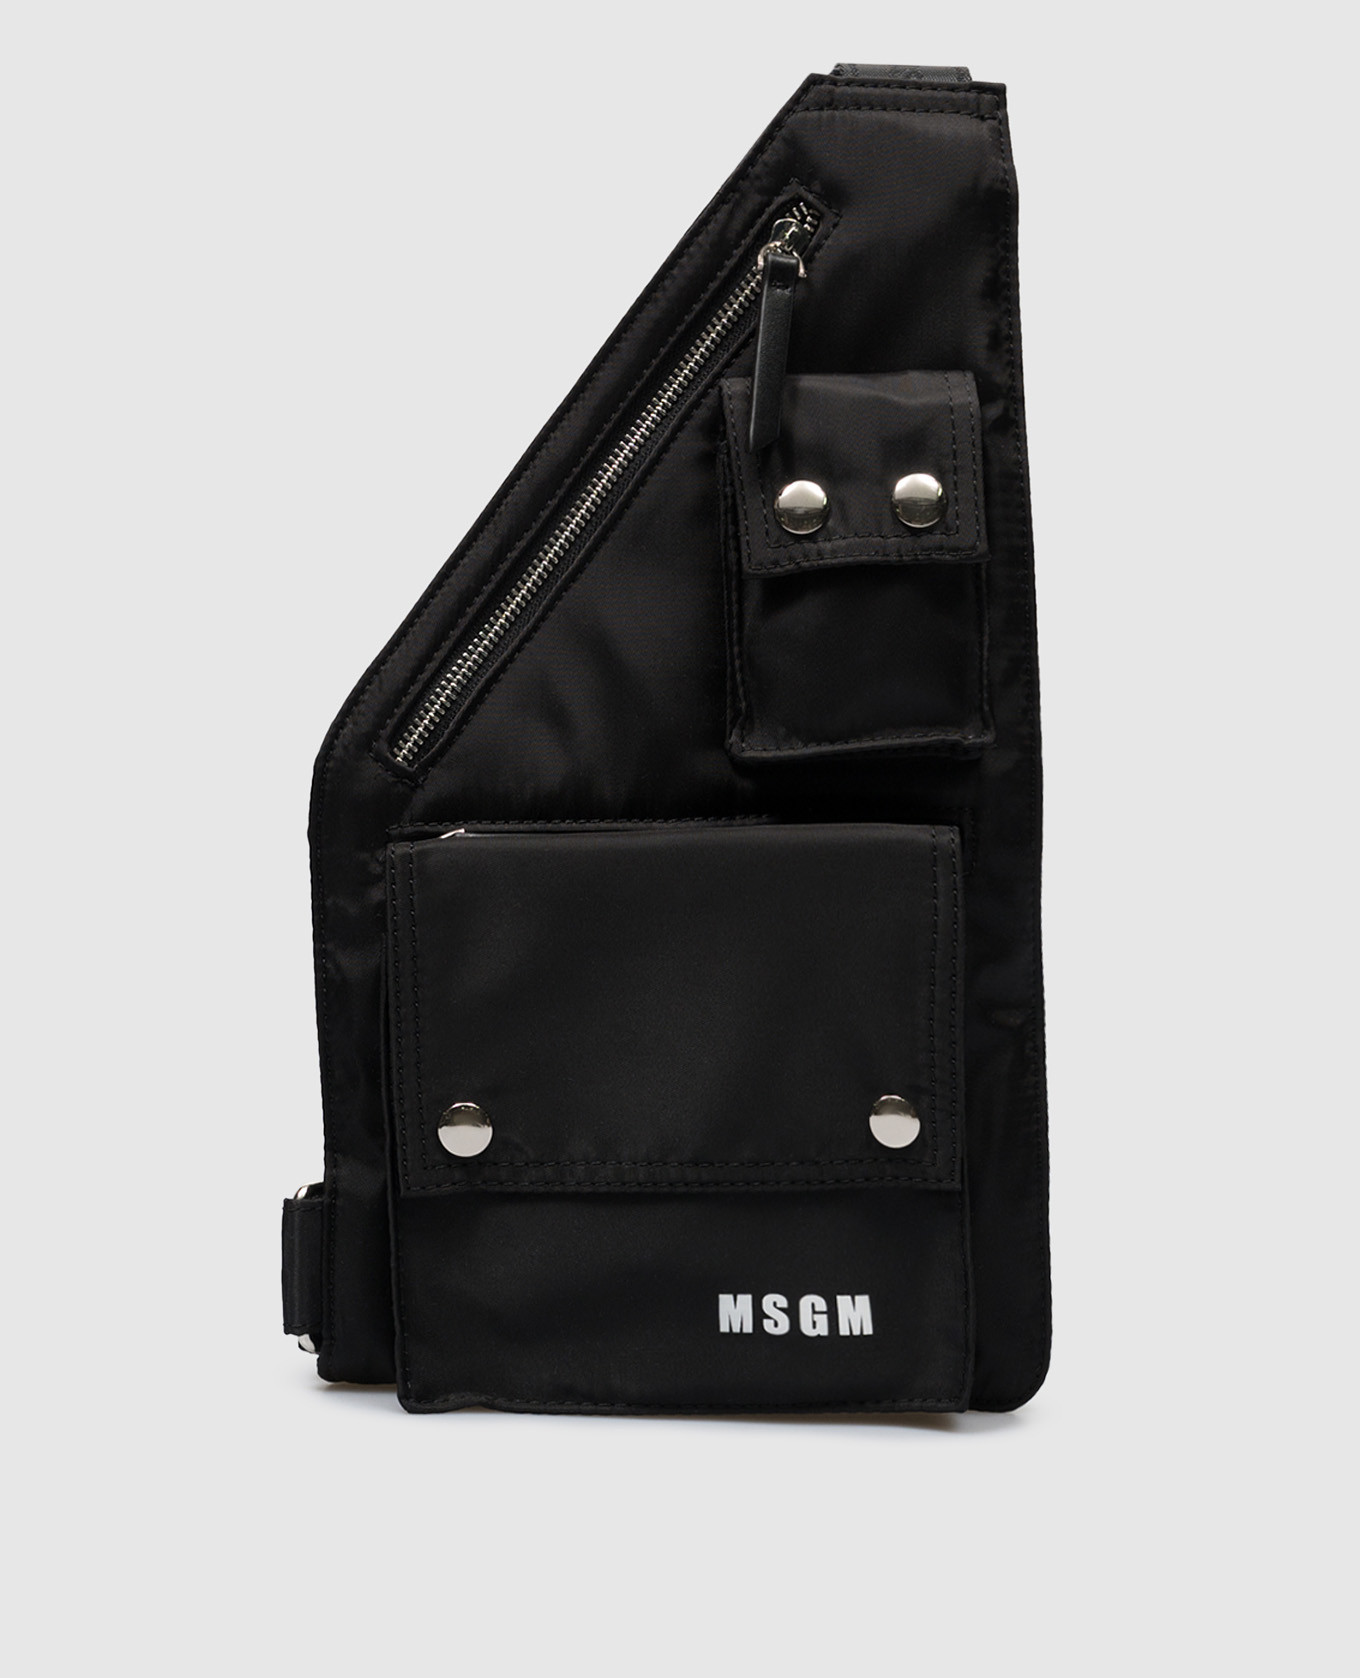 Black sling bag